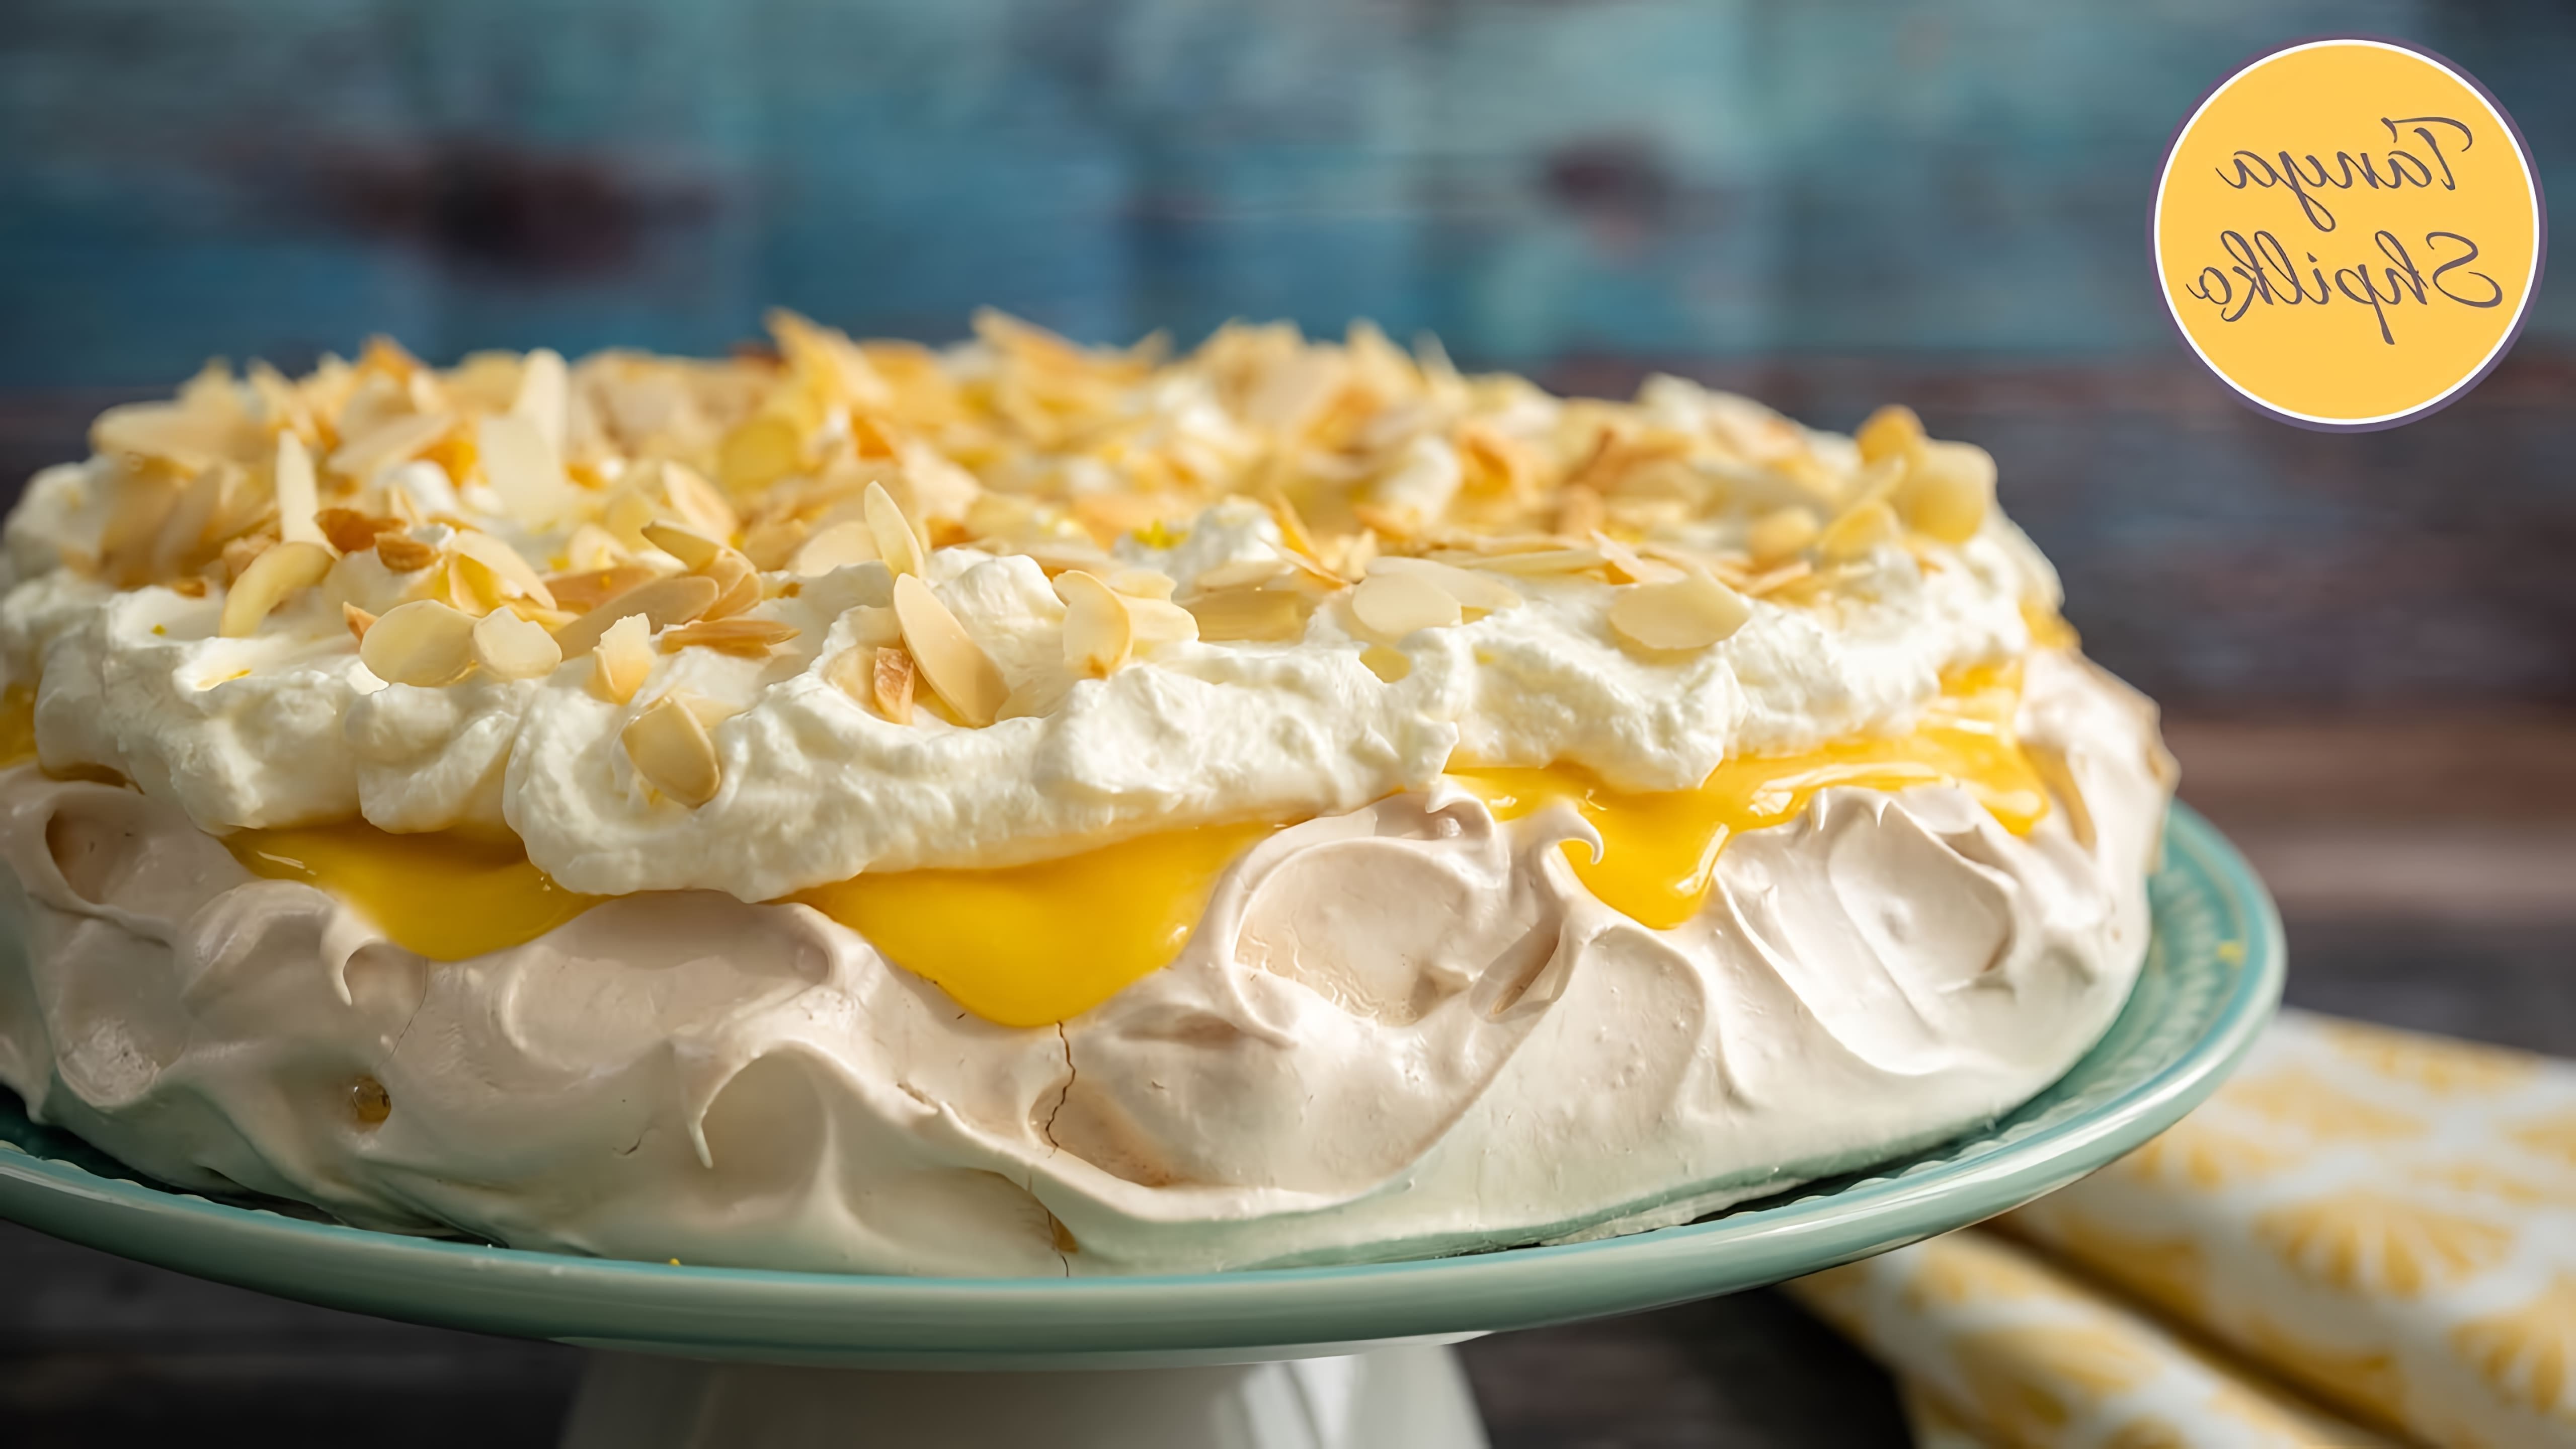 В этом видео демонстрируется процесс приготовления торта "Павлова" с лимонным кремом